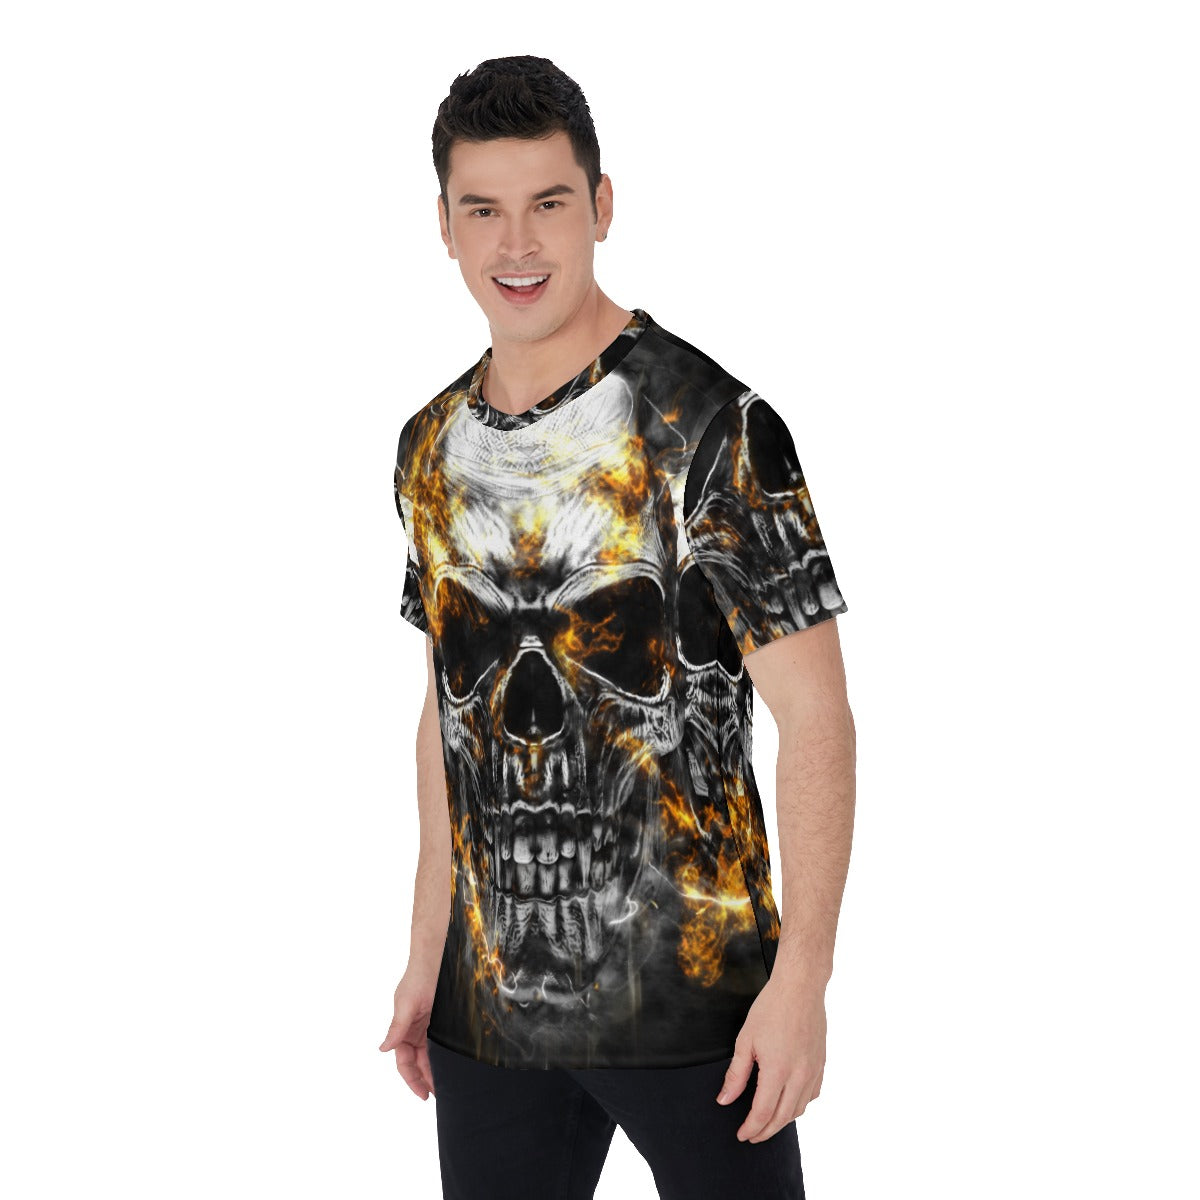 Gothic flaming fire skull Men's O-Neck T-Shirt, Grim reaper skull shirt, skull t-shirt